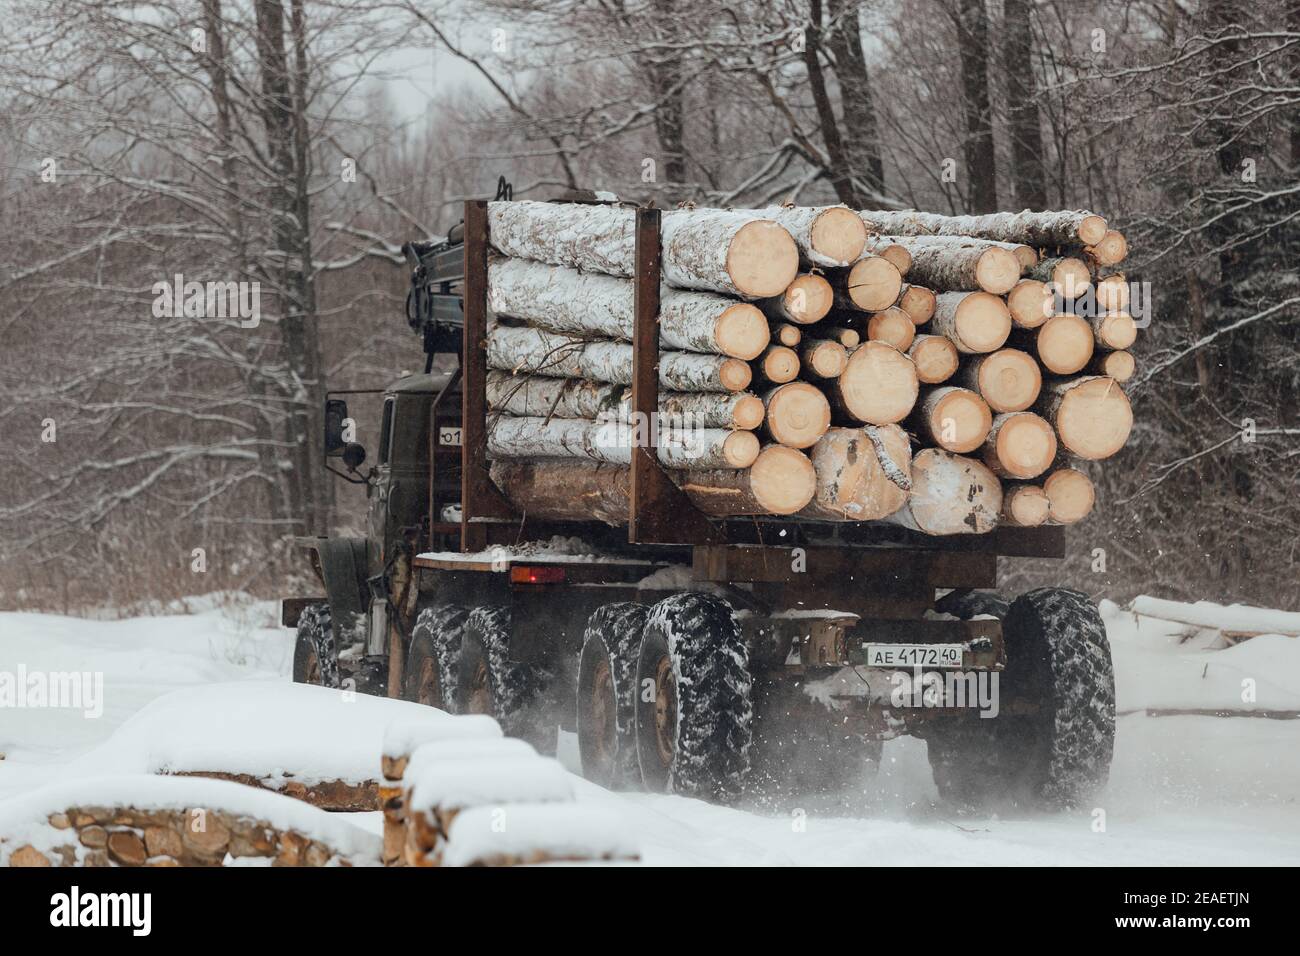 disboscamento illegale, raccolta di legno per l'industria manifatturiera, trasporto caricato con tronchi di alberi in legno, trasporto di legno in inverno Foto Stock